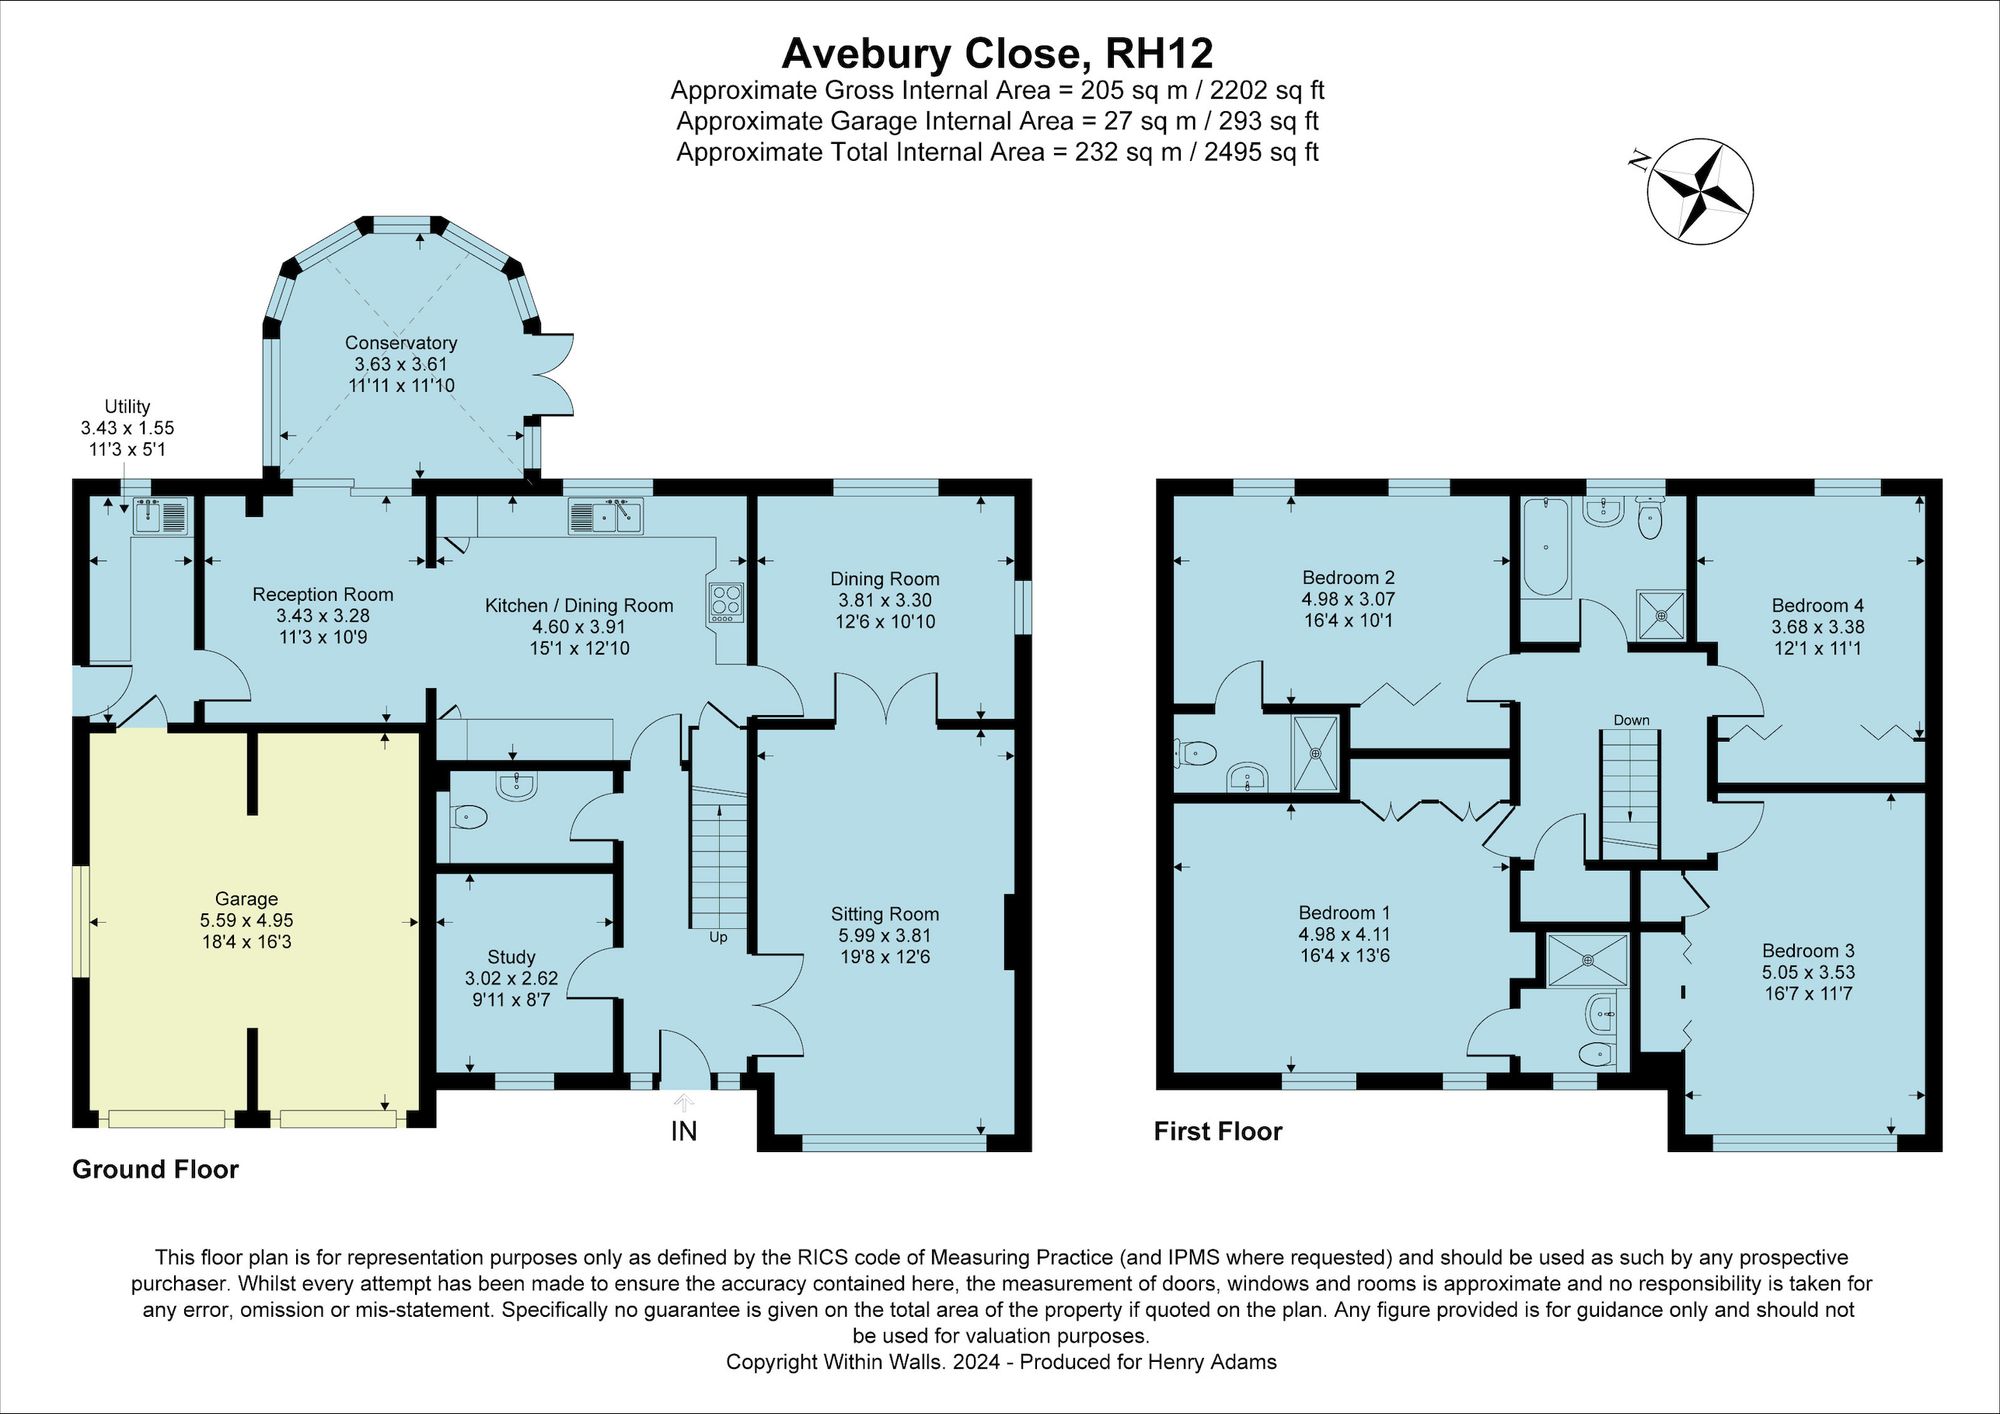 Avebury Close, Horsham, RH12 floorplans